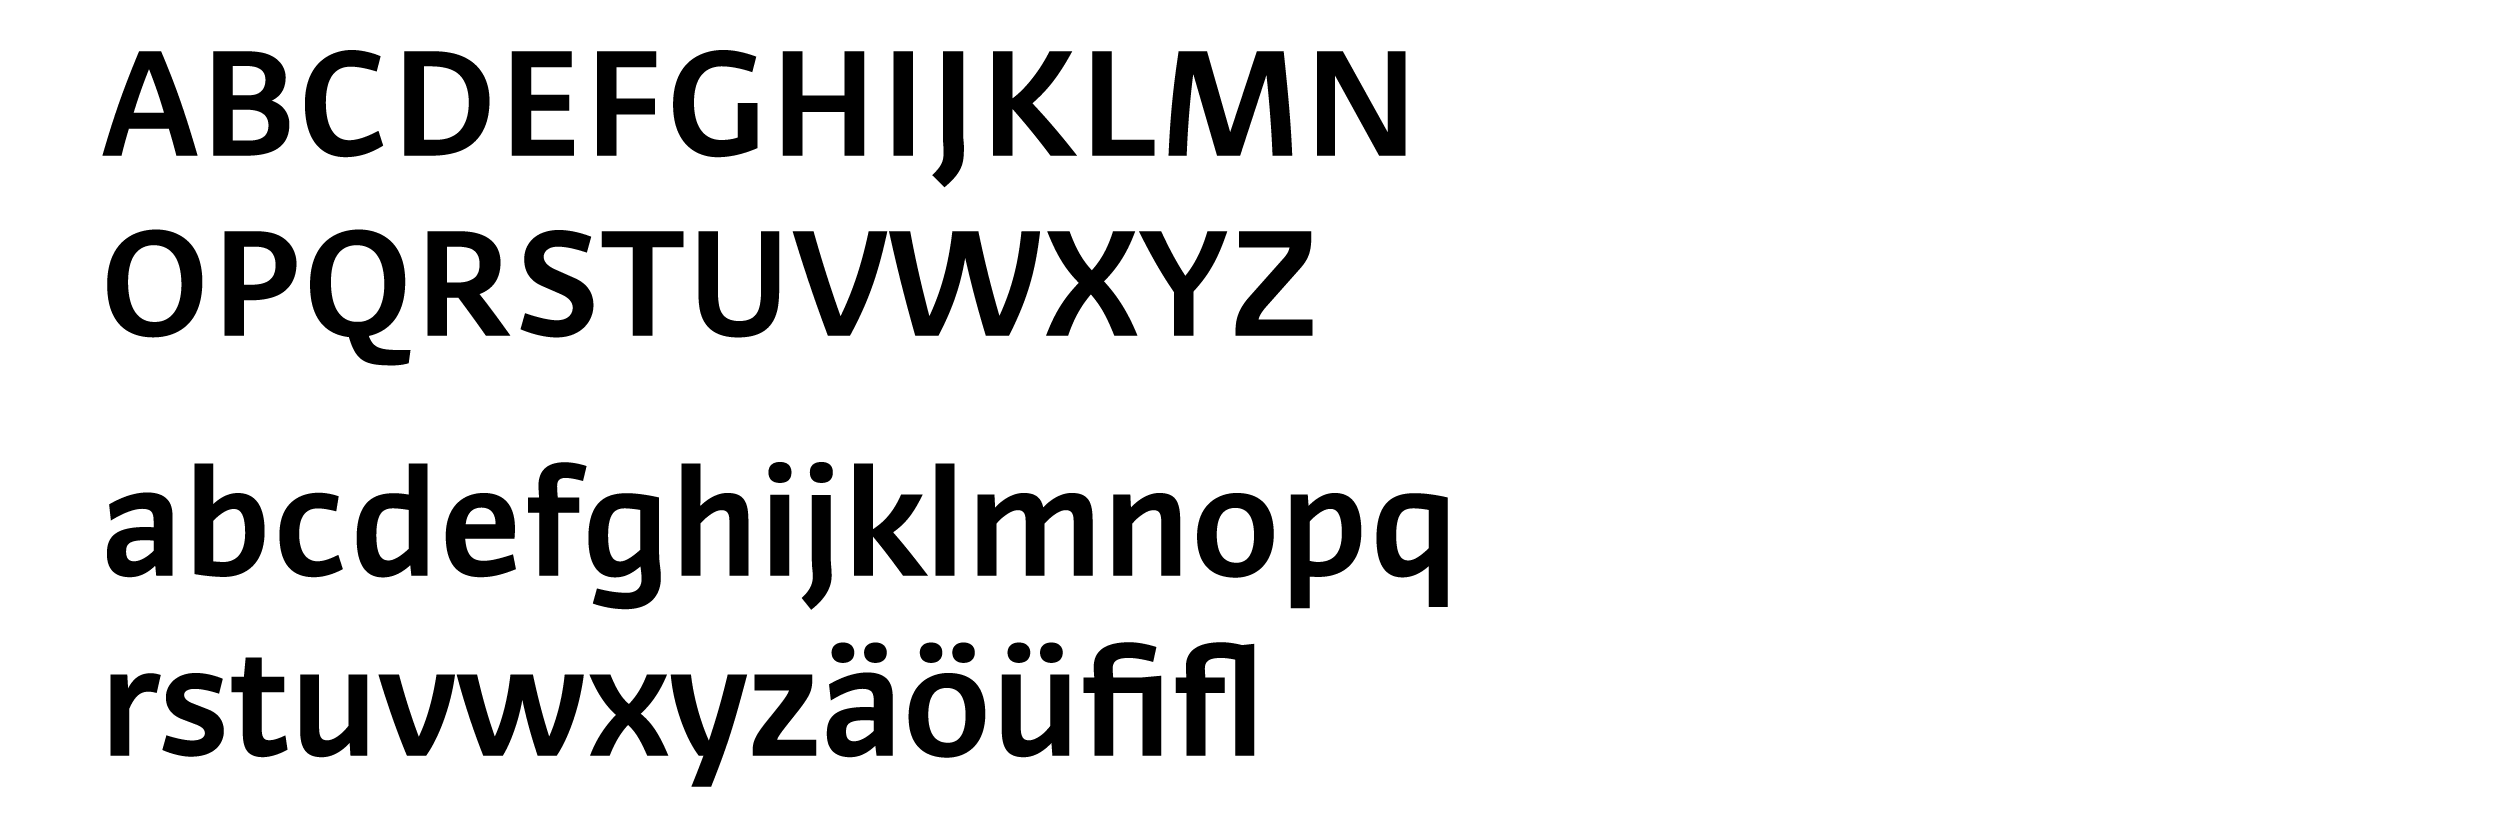 20140611_AFF_Heungkuk_Typeface-00a